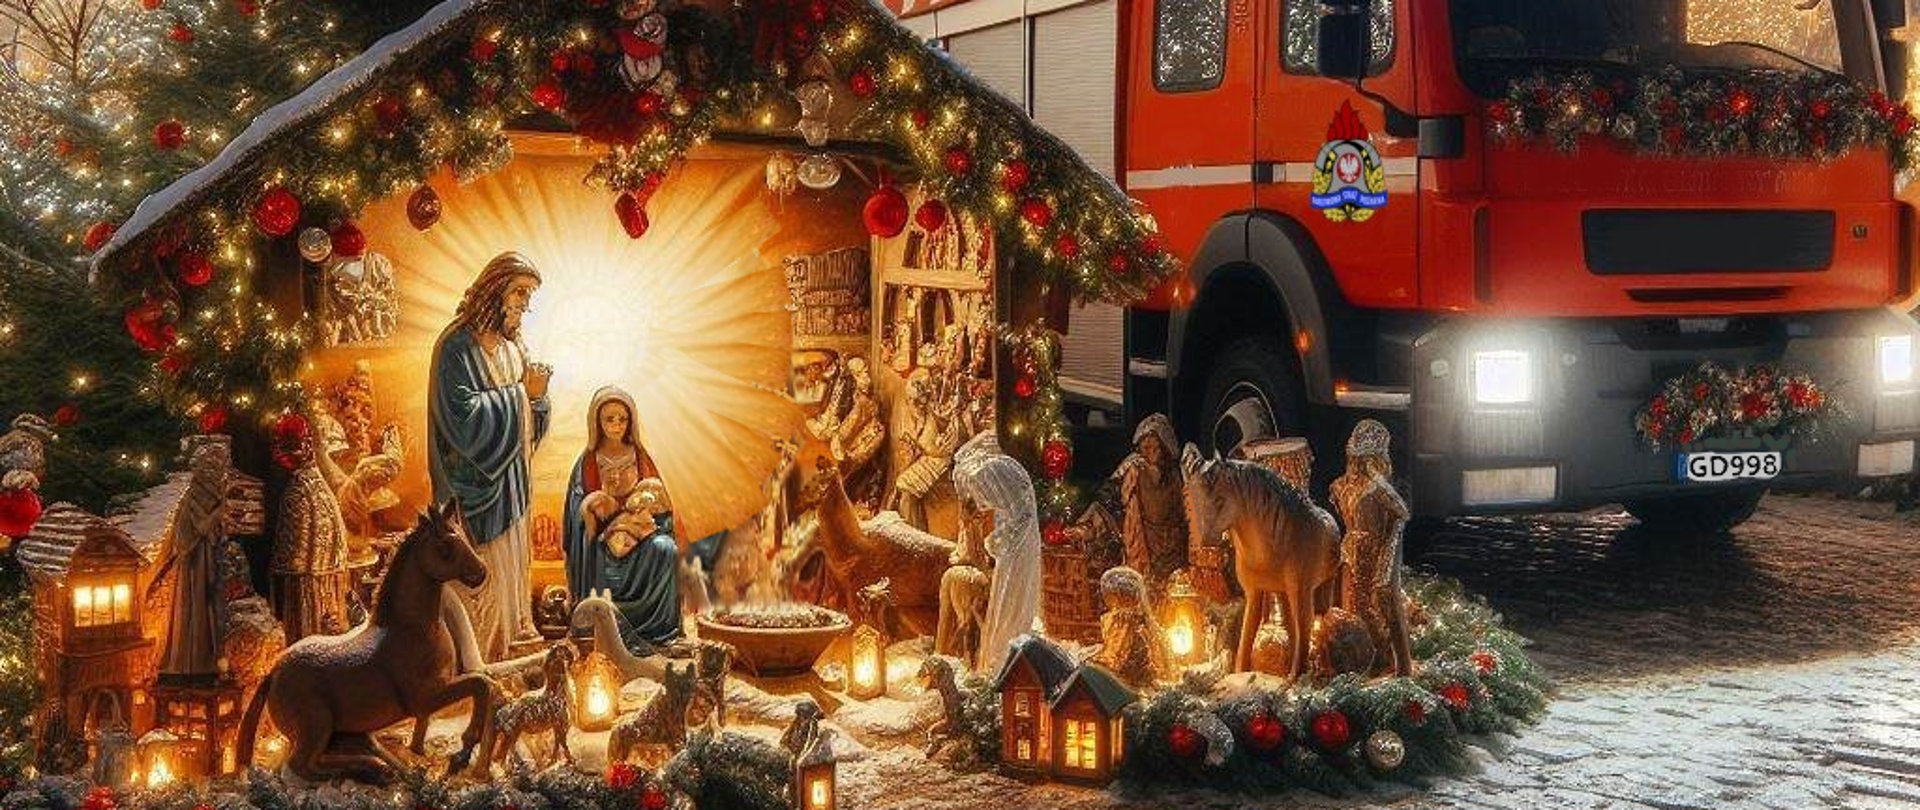 Na obrazie widoczna szopka świąteczna, obok samochód PSP ozdobiony świątecznie, w tle choinki i starówka Gdańska. Poniżej życzenia świąteczno-noworoczne.